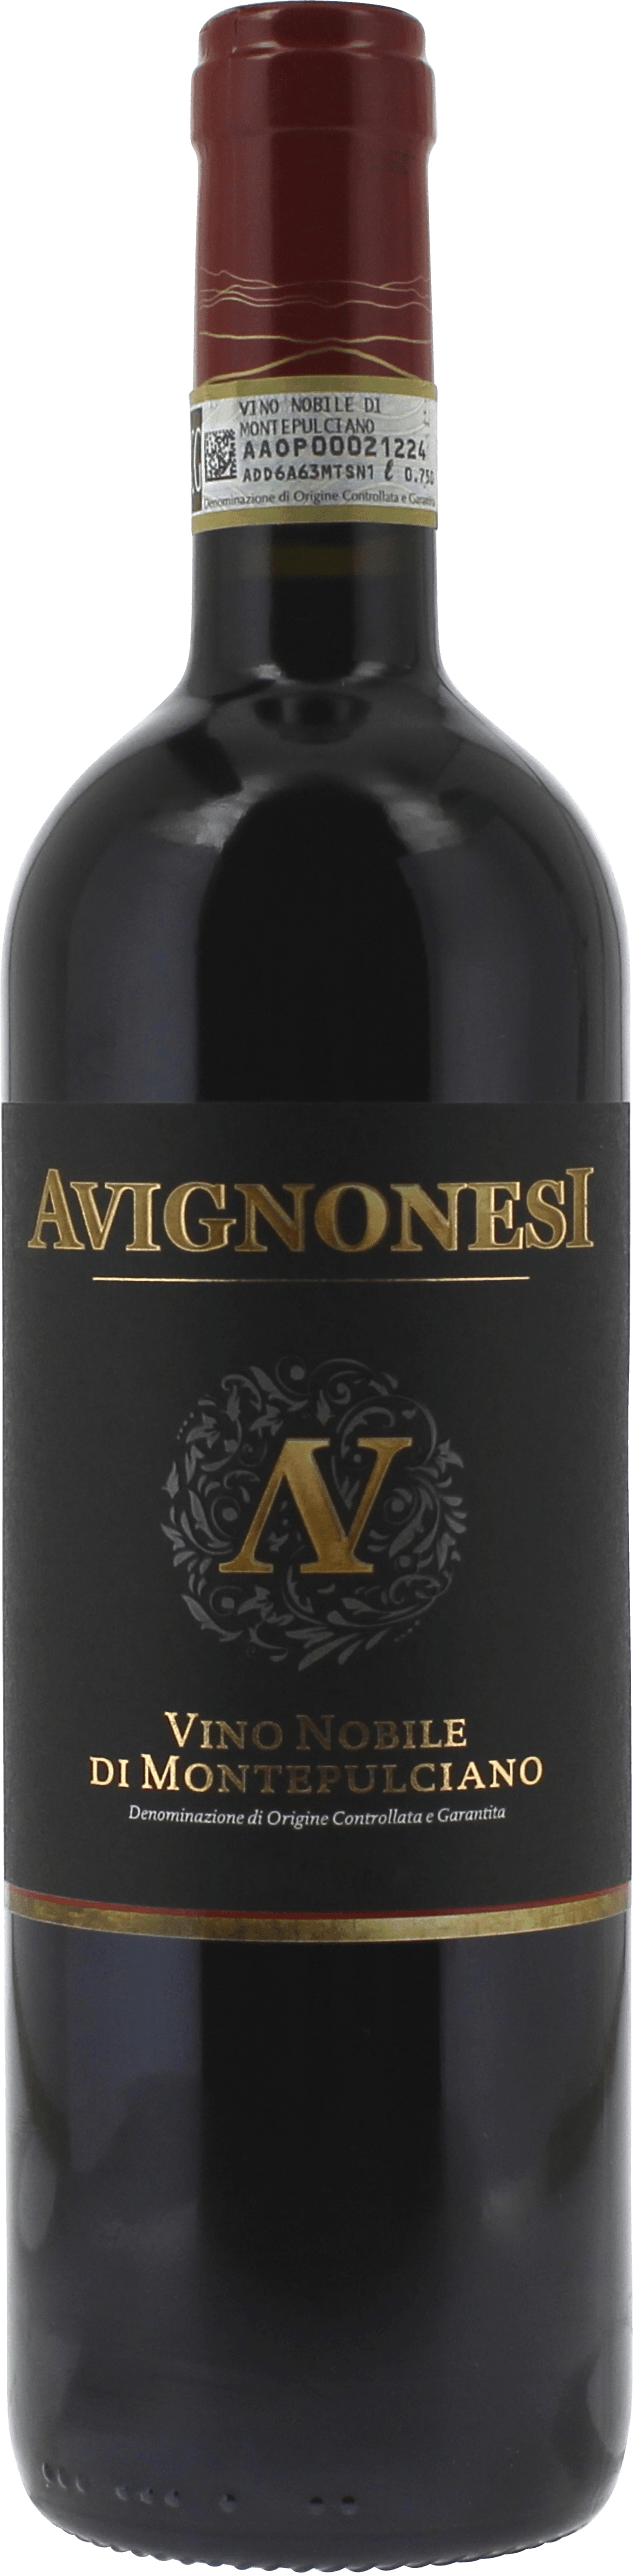 Avignonesi -  rosso di montepulciano prugnolo gentile 2016  Italie, Vin italien